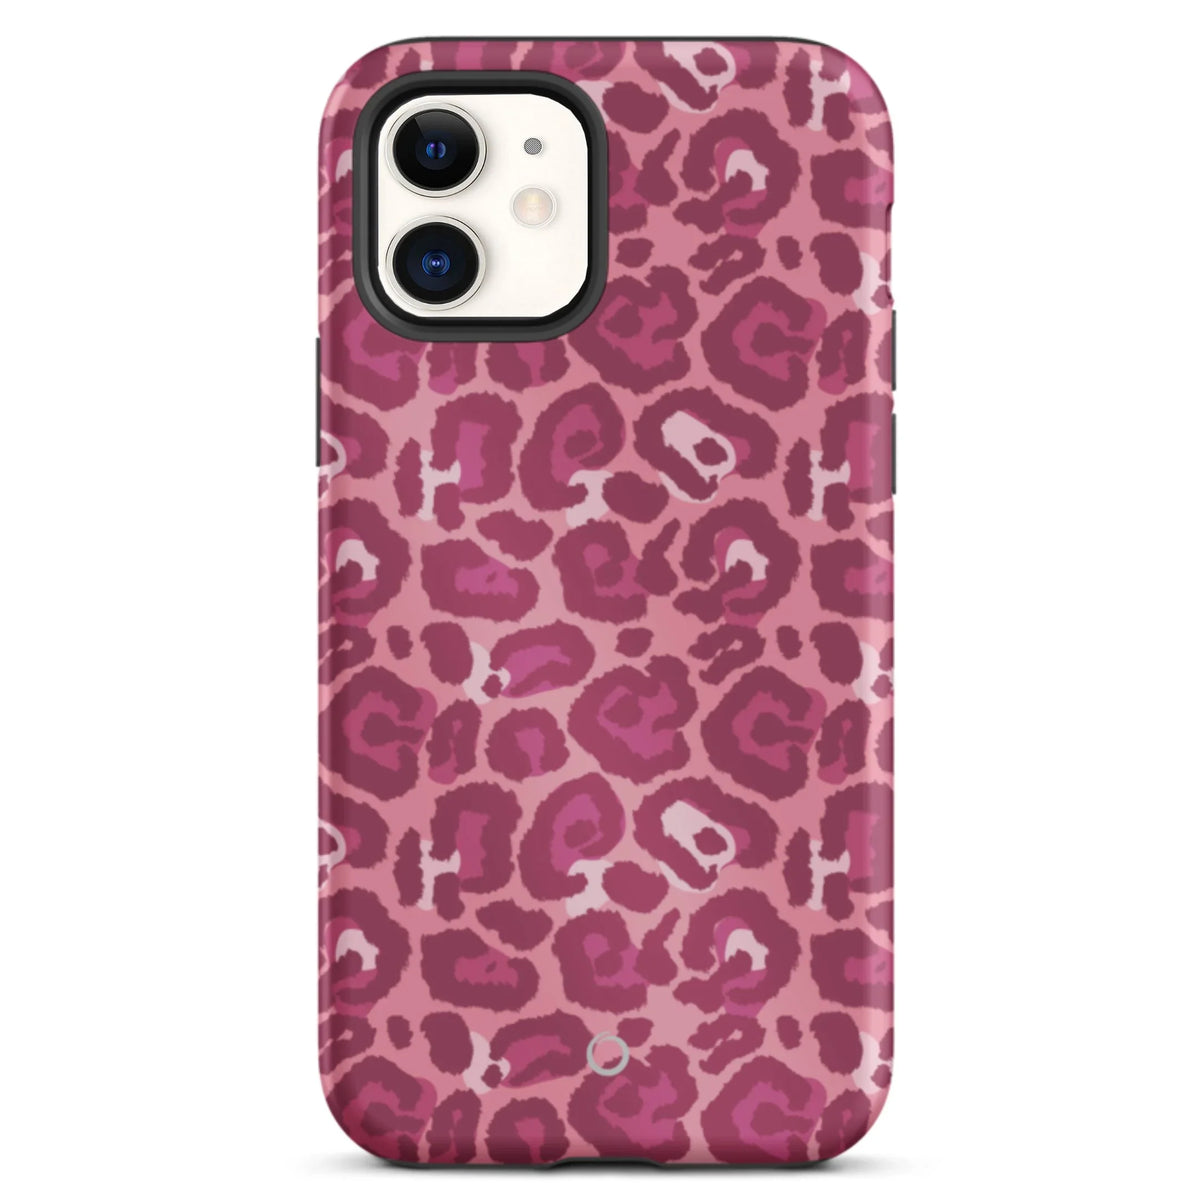 Pink Leopard iPhone Case - iPhone 12 Mini